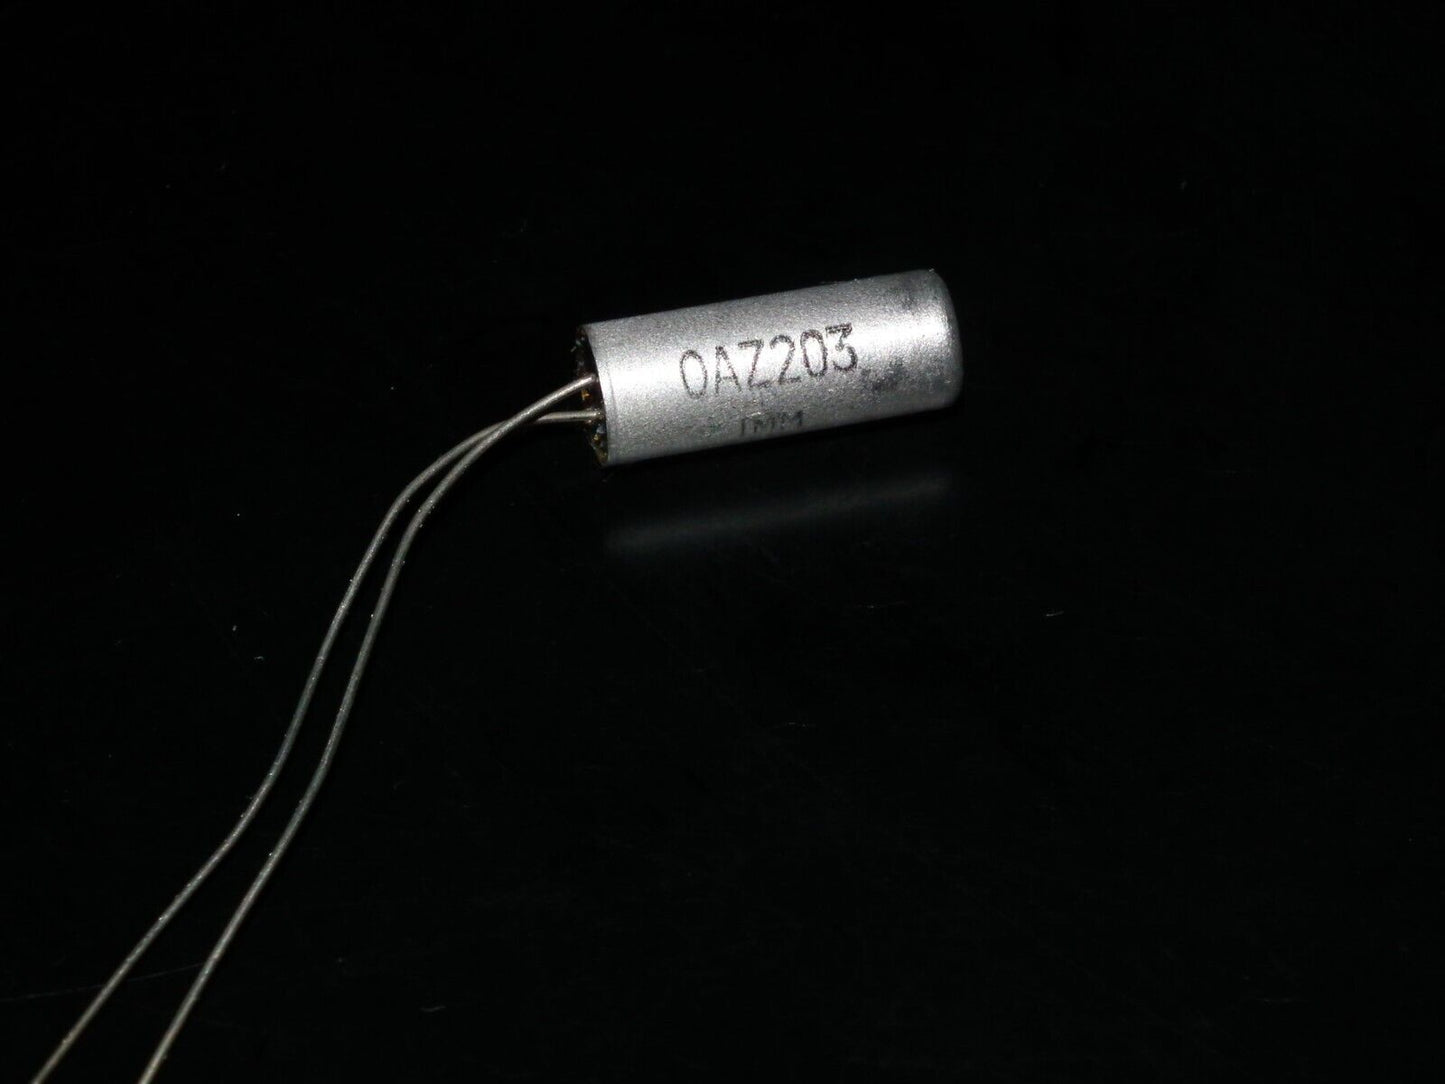 One OAZ203 Mullard UK Germanium diode (1 pcs) Guitar Pedals Fuzz